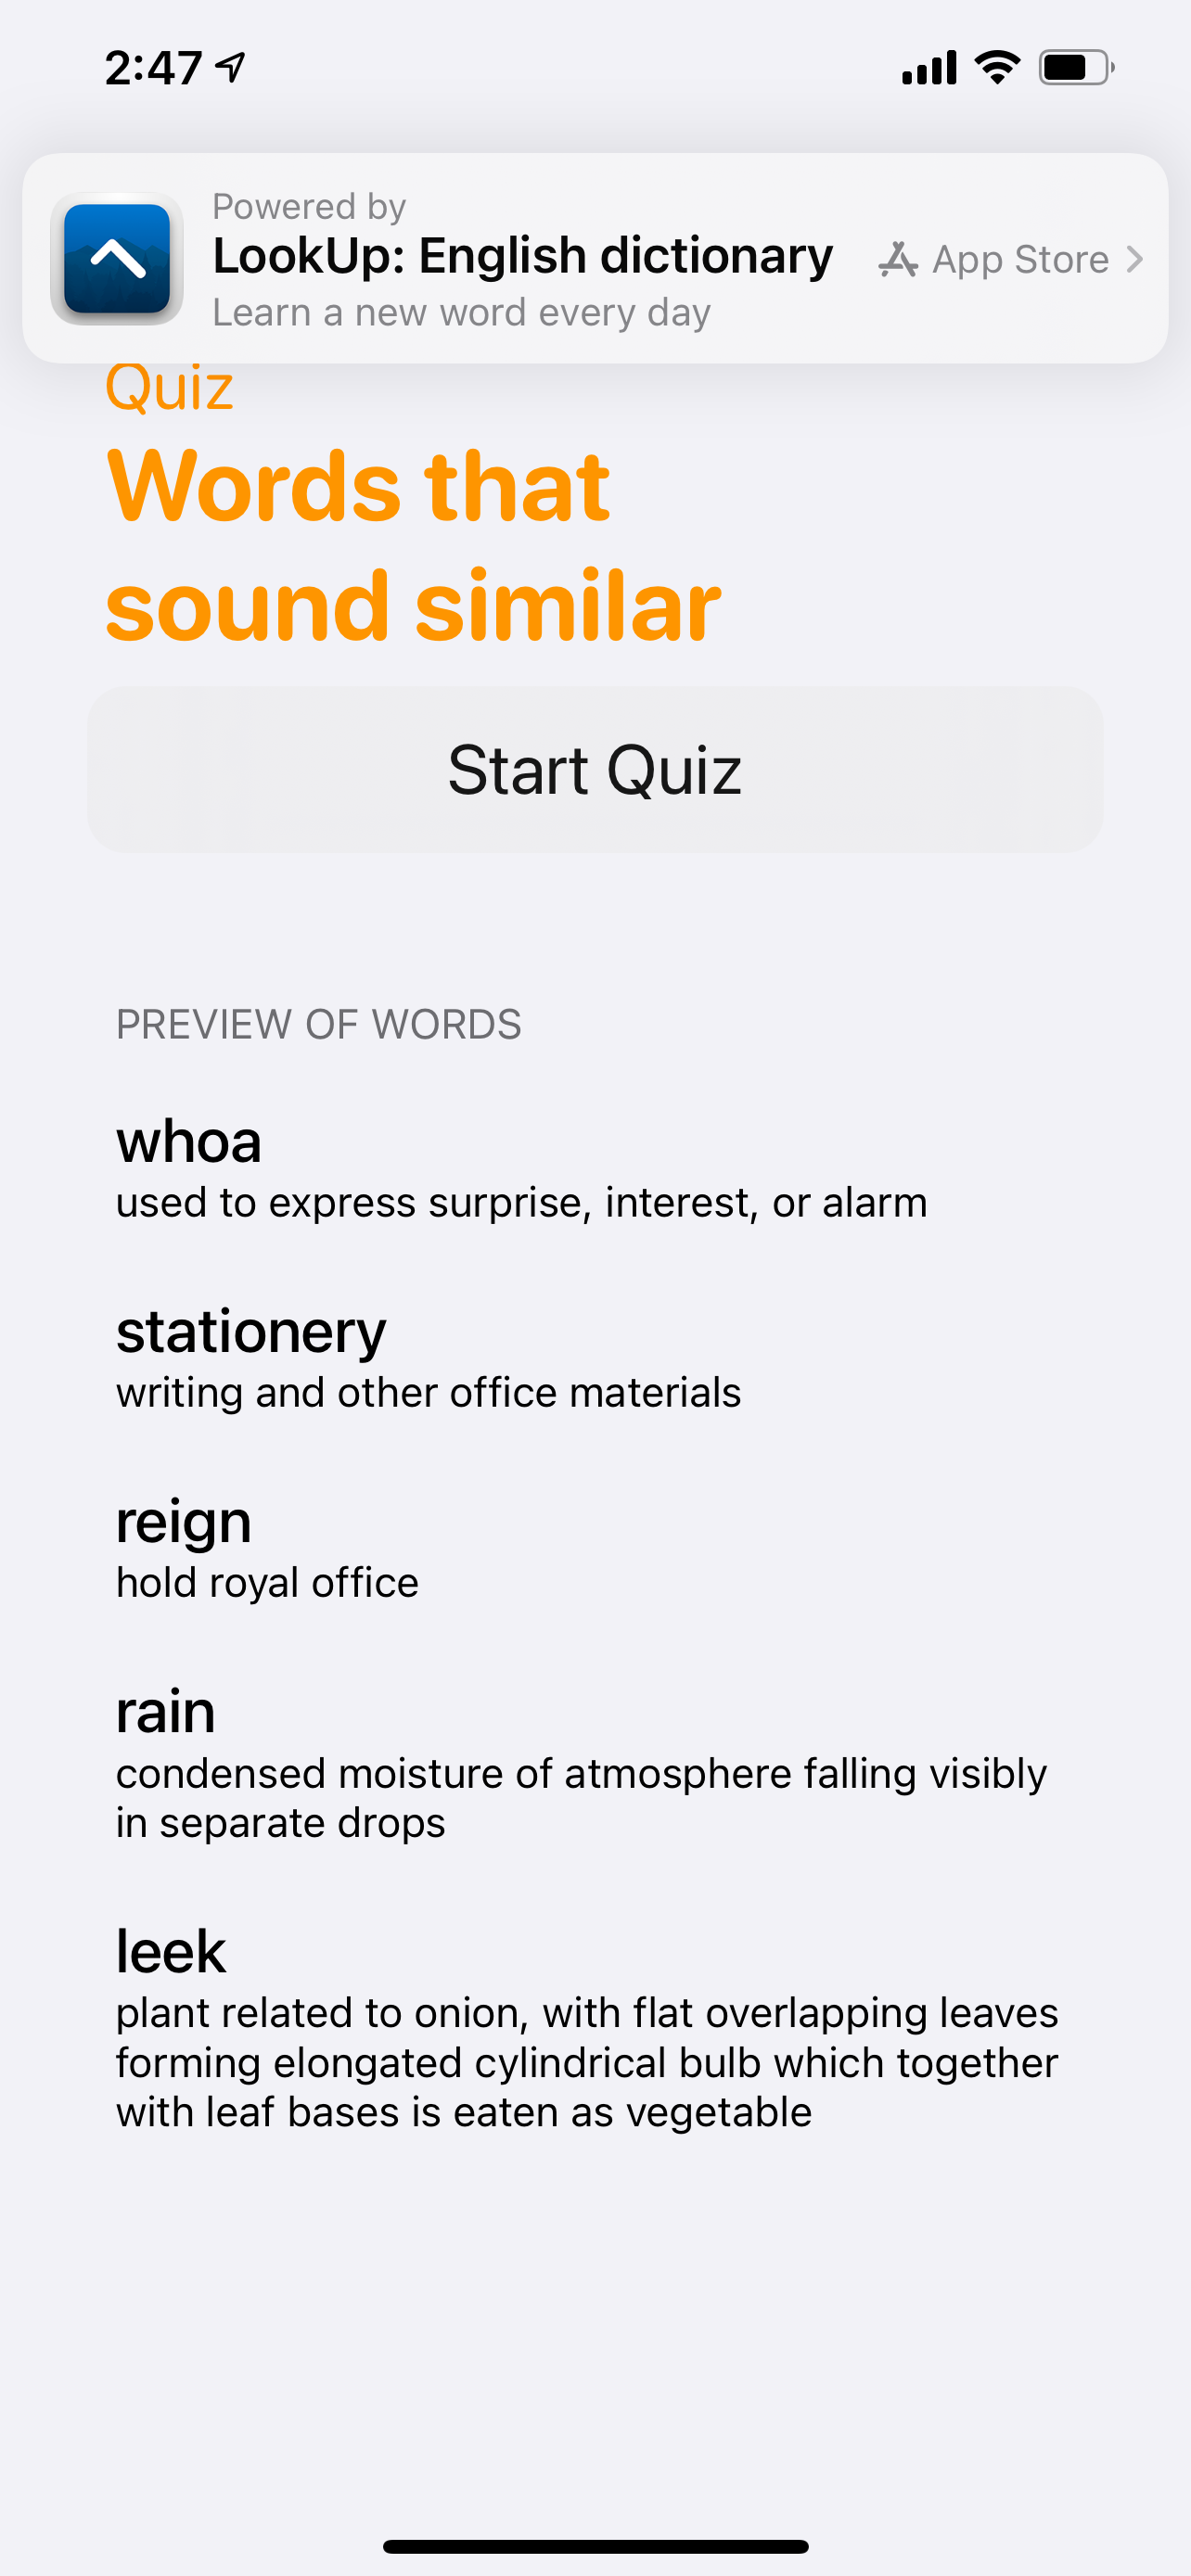 App Clip for a LookUp quiz